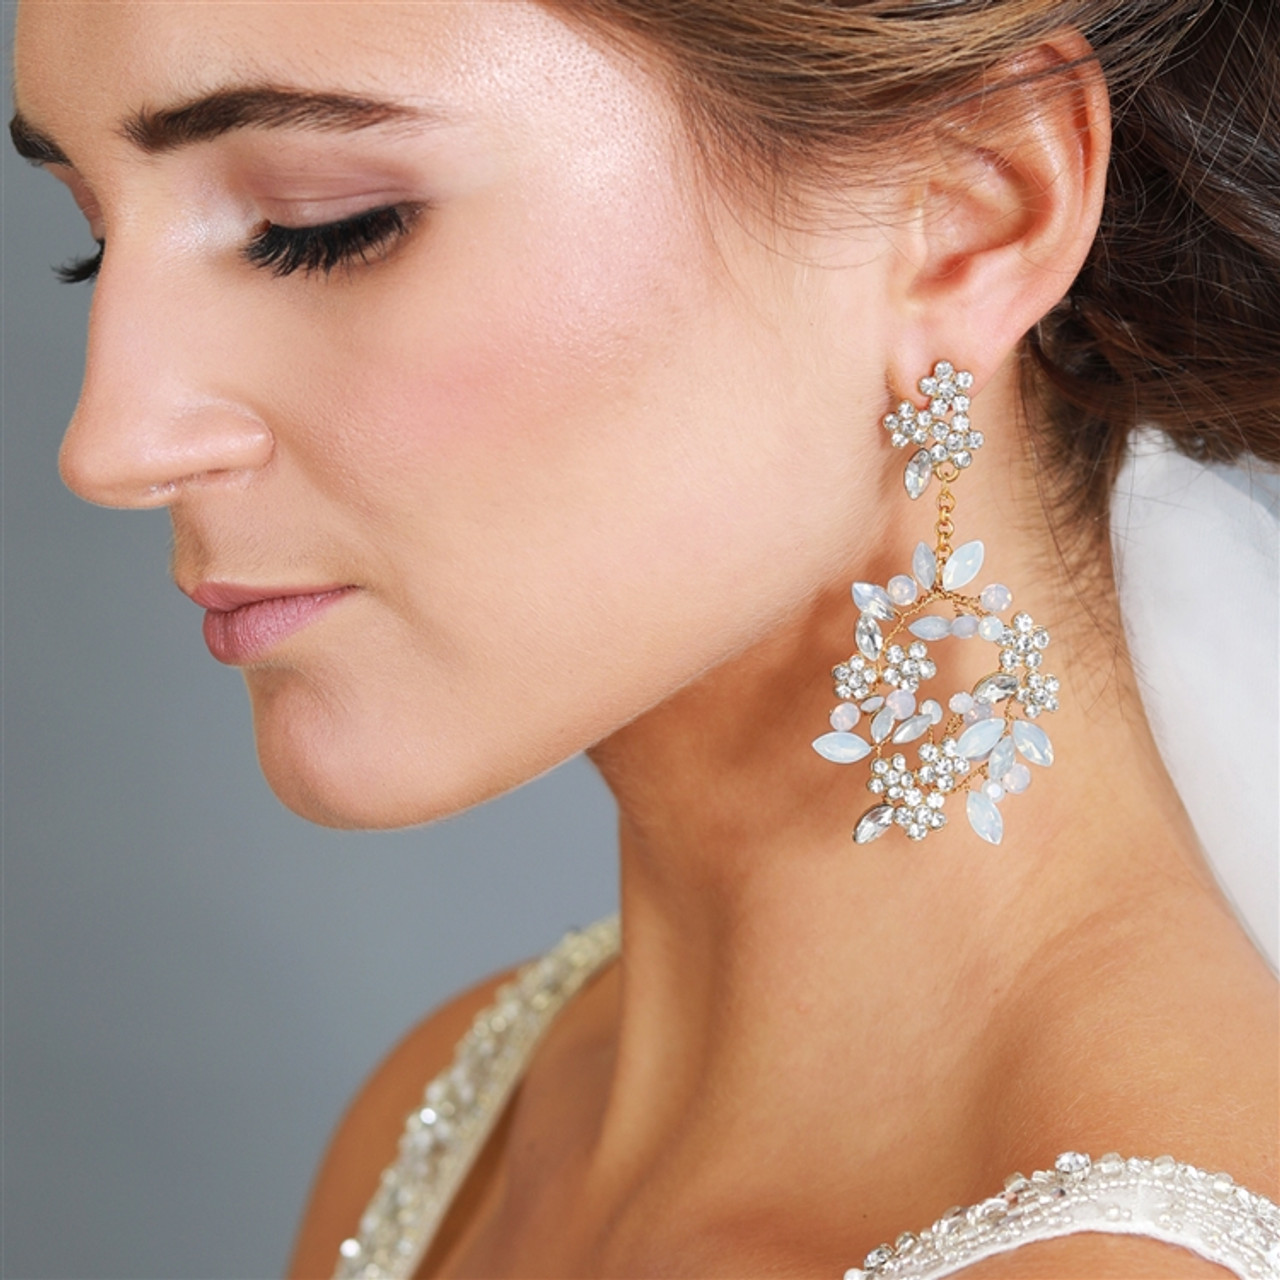 teardrop earrings classy earrings. clear rhinestone earrings gold earrings prom earrings clear crystal earrings Bridal earrings